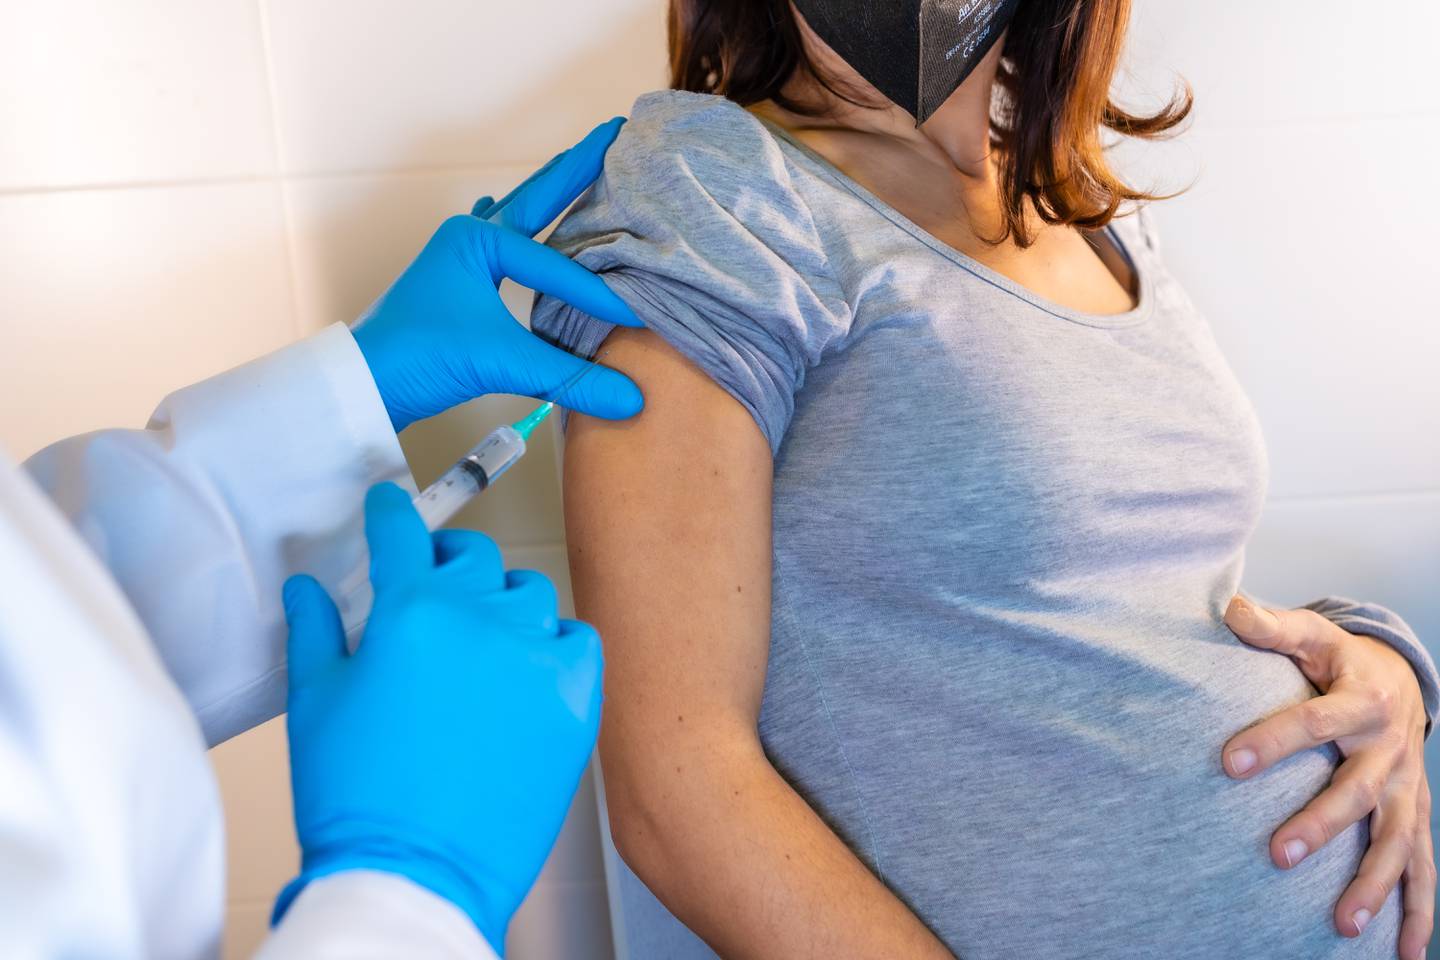 La vacuna contra la tosferina es necesario en todos los embarazos de la mujer, para que pueda proteger a su bebé desde el vientre.

Fotografía: Shutterstock